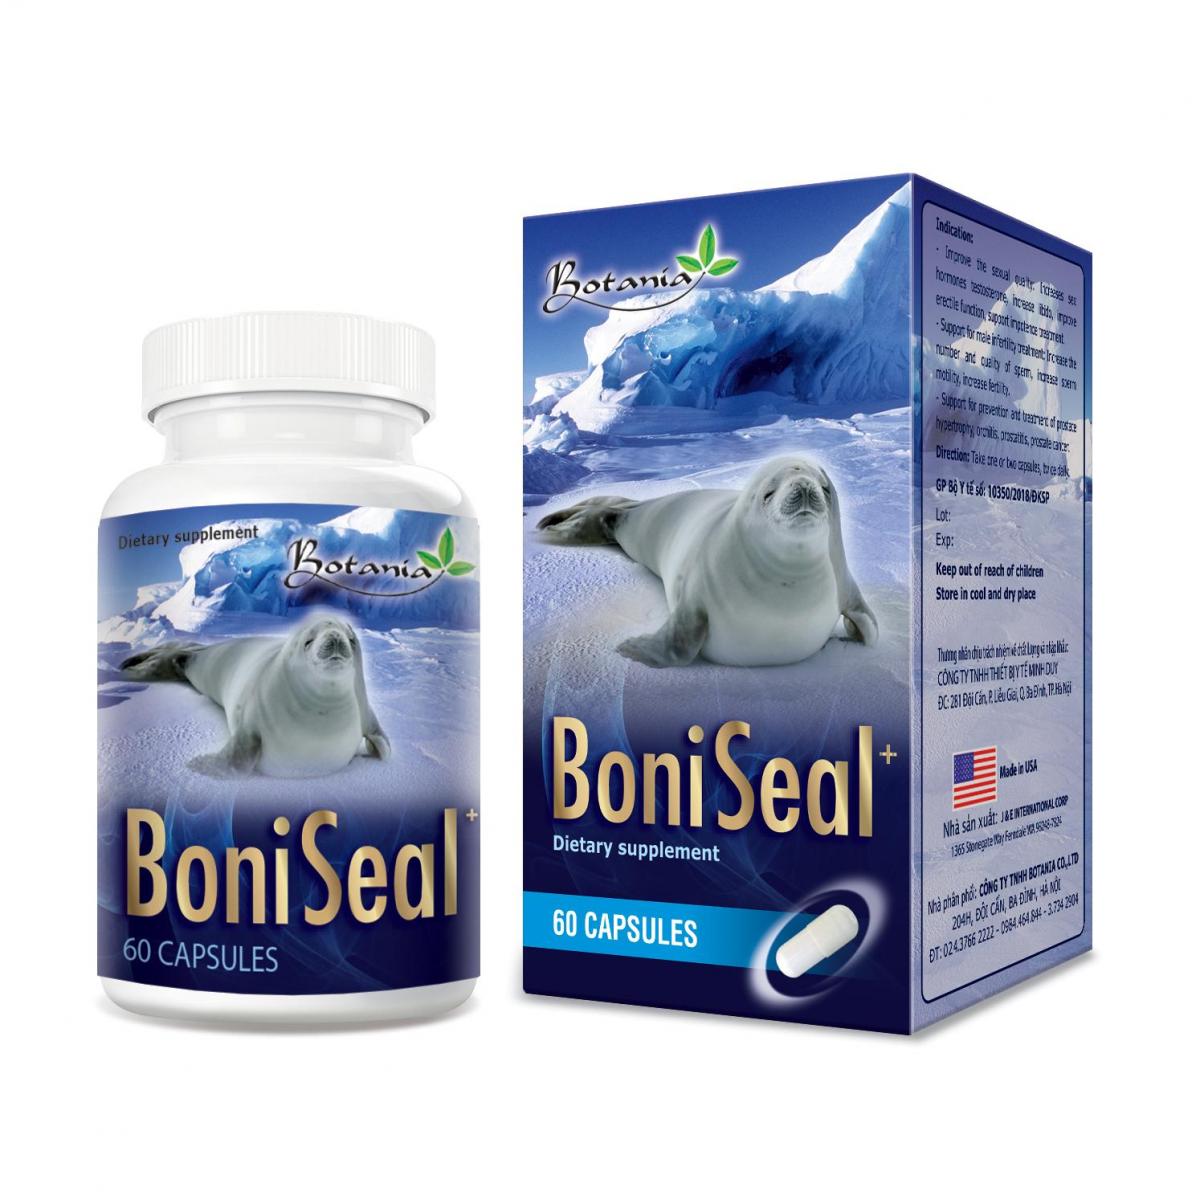 BoniSeal + - Giải pháp tối ưu giúp tăng cường sức khỏe sinh lý nam giới